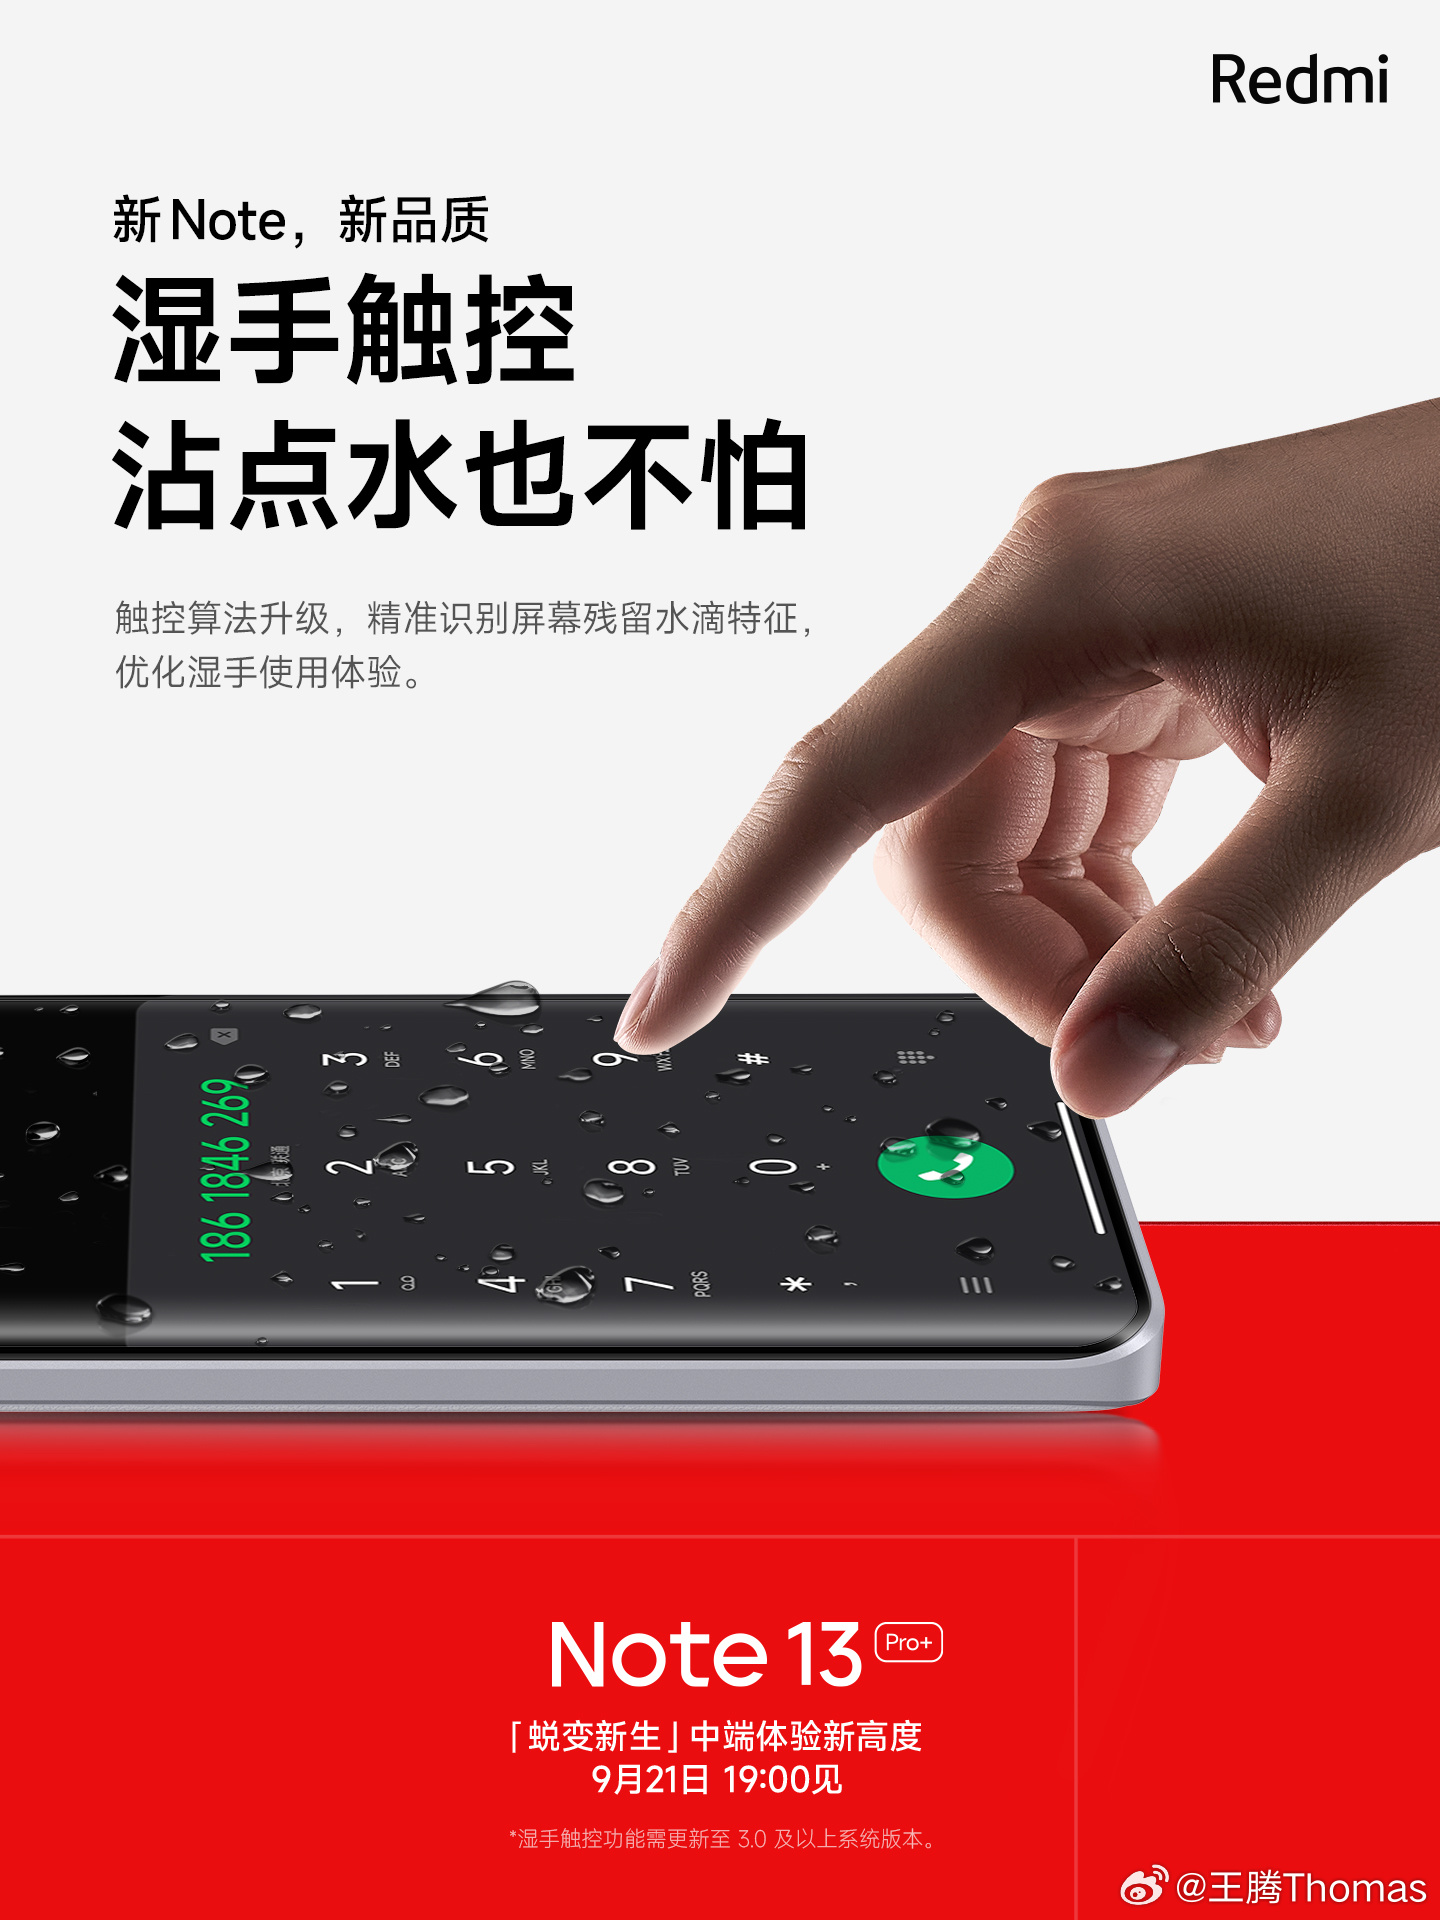 Ya es oficial: El Redmi Note 13 Pro+ tendrá protección IP68 contra el agua